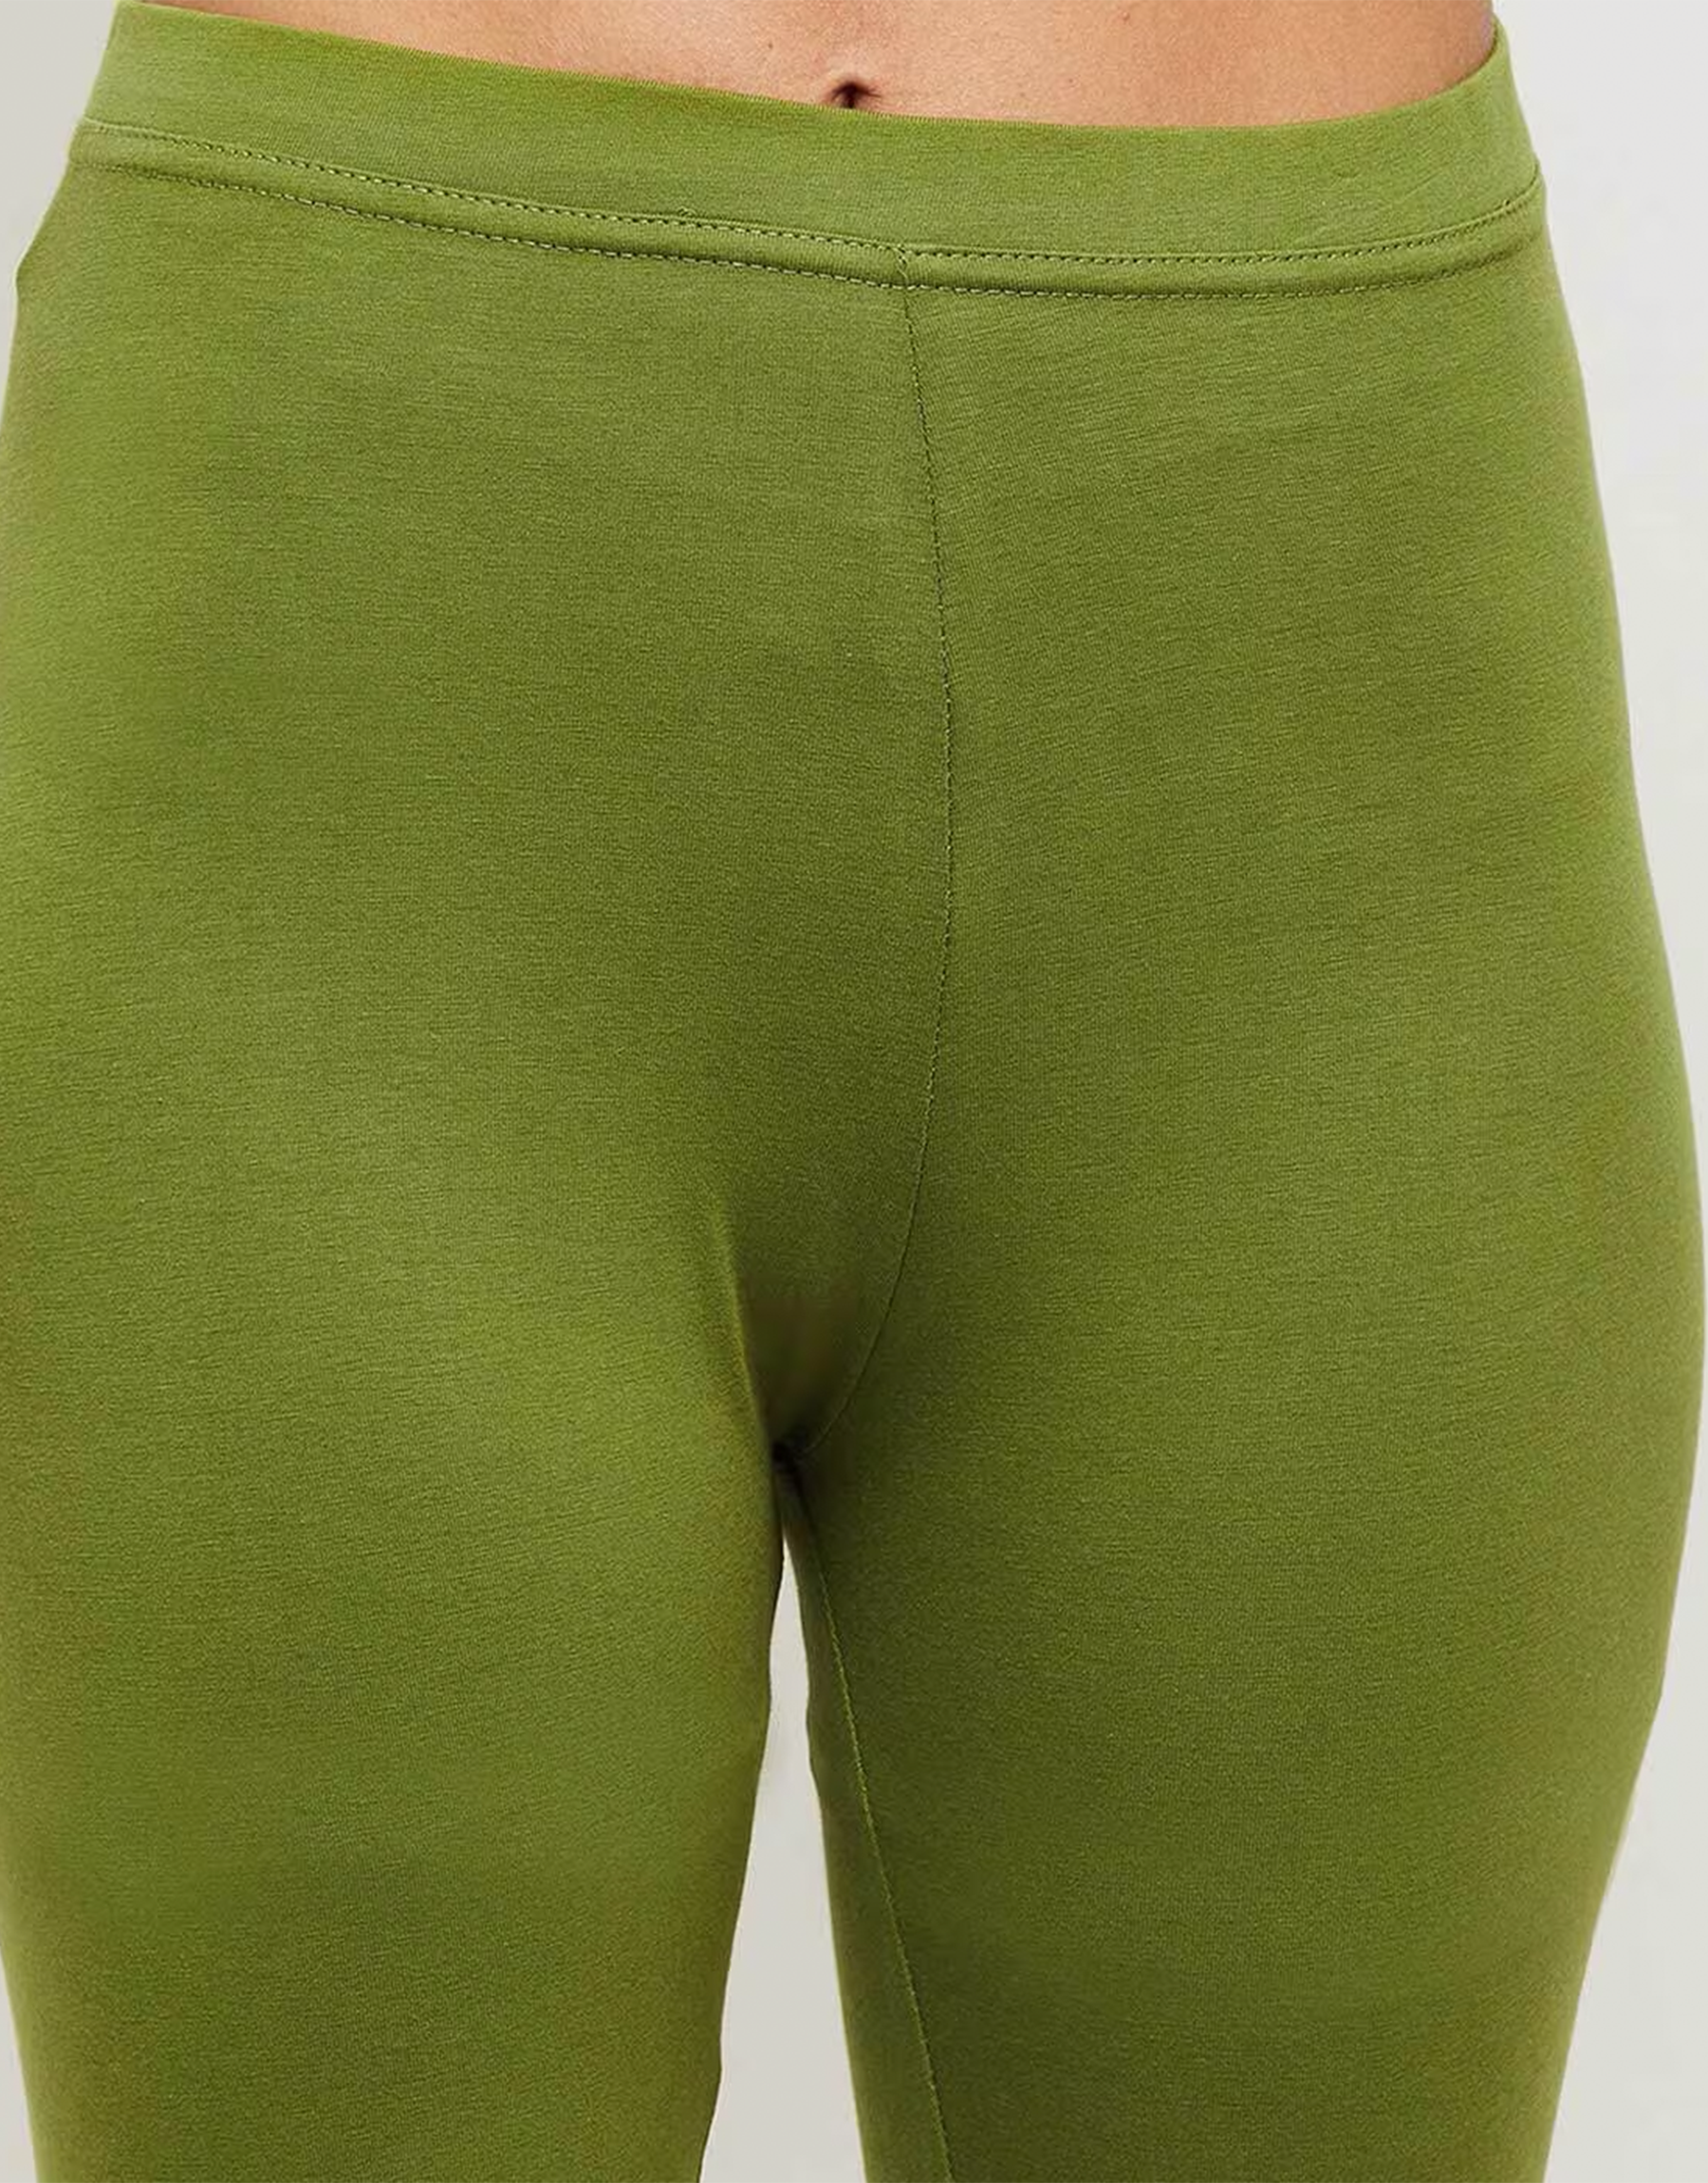 Top more than 240 green color leggings